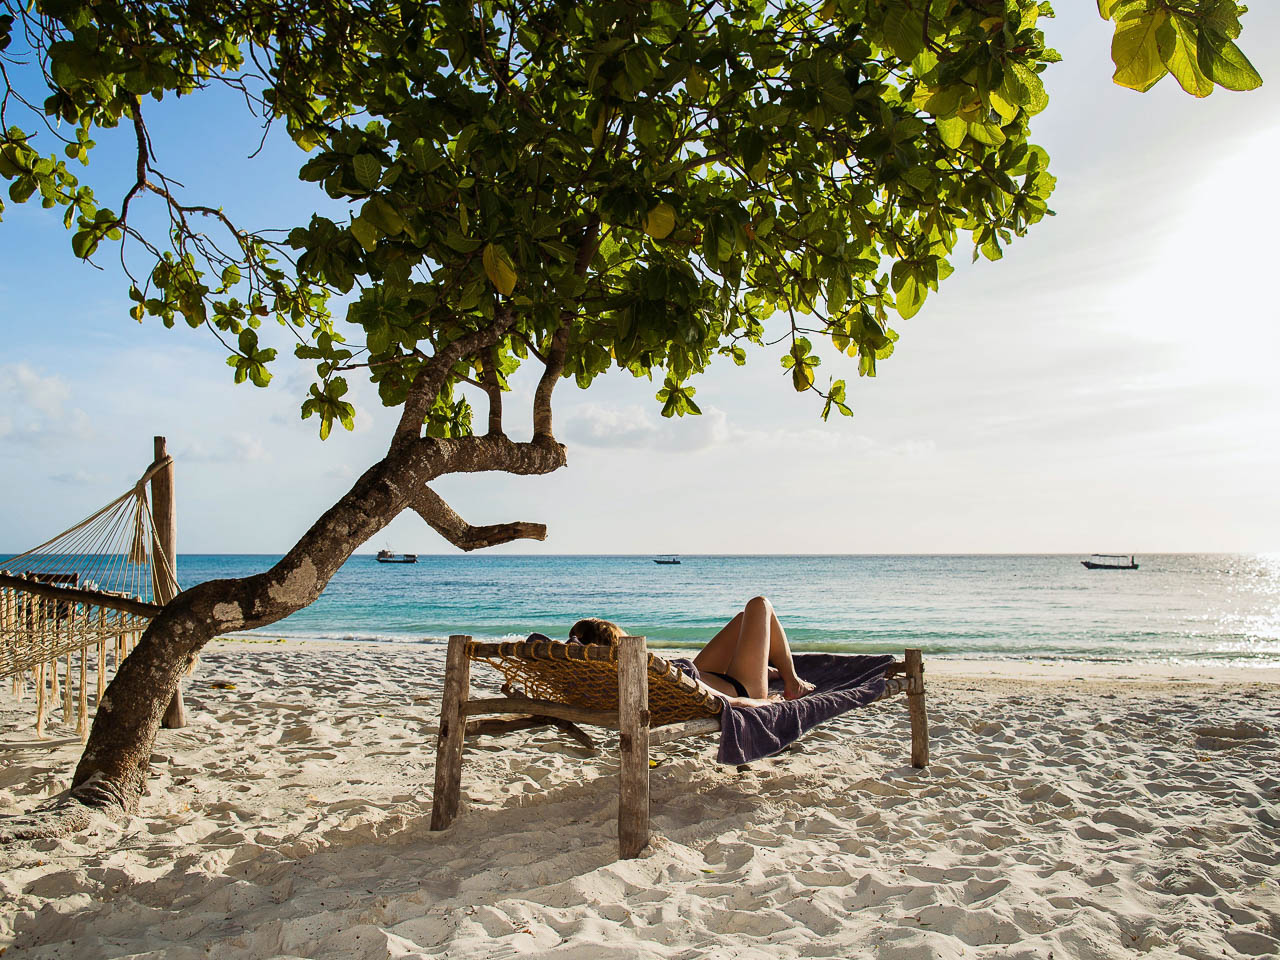 zandstrand op pemba met een ligstoel met daarop iemand onder een boom aan de indische oceaan in tanzania